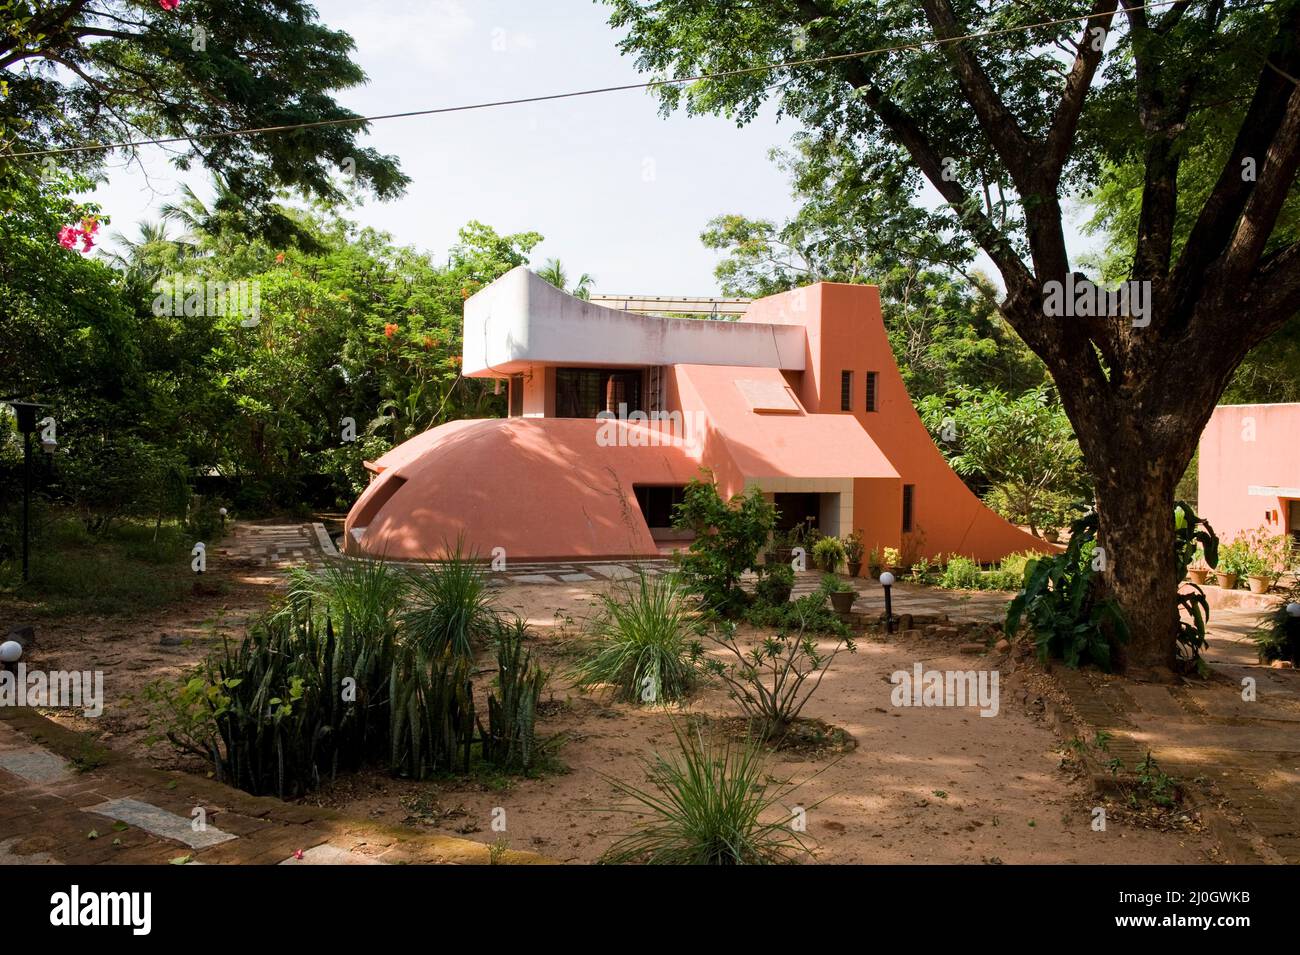 Auroville, Indien - Mai 2016: Von Roger Anger zu Beginn der siebziger Jahre entworfenes Haus. Auromodele-Community. Stockfoto